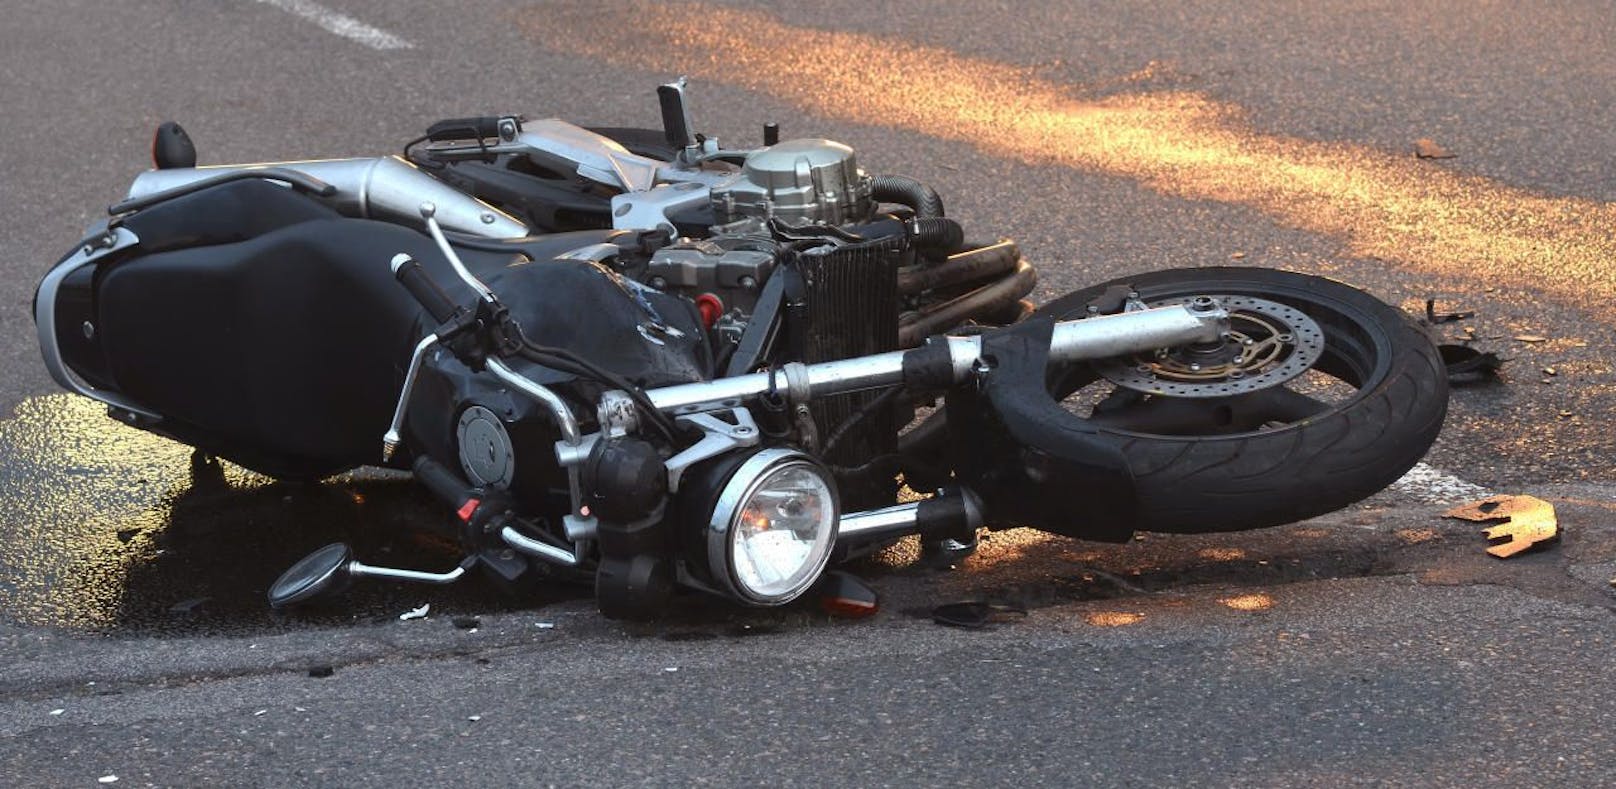 Kopfverletzung: Biker kollidierte mit Kleinbus